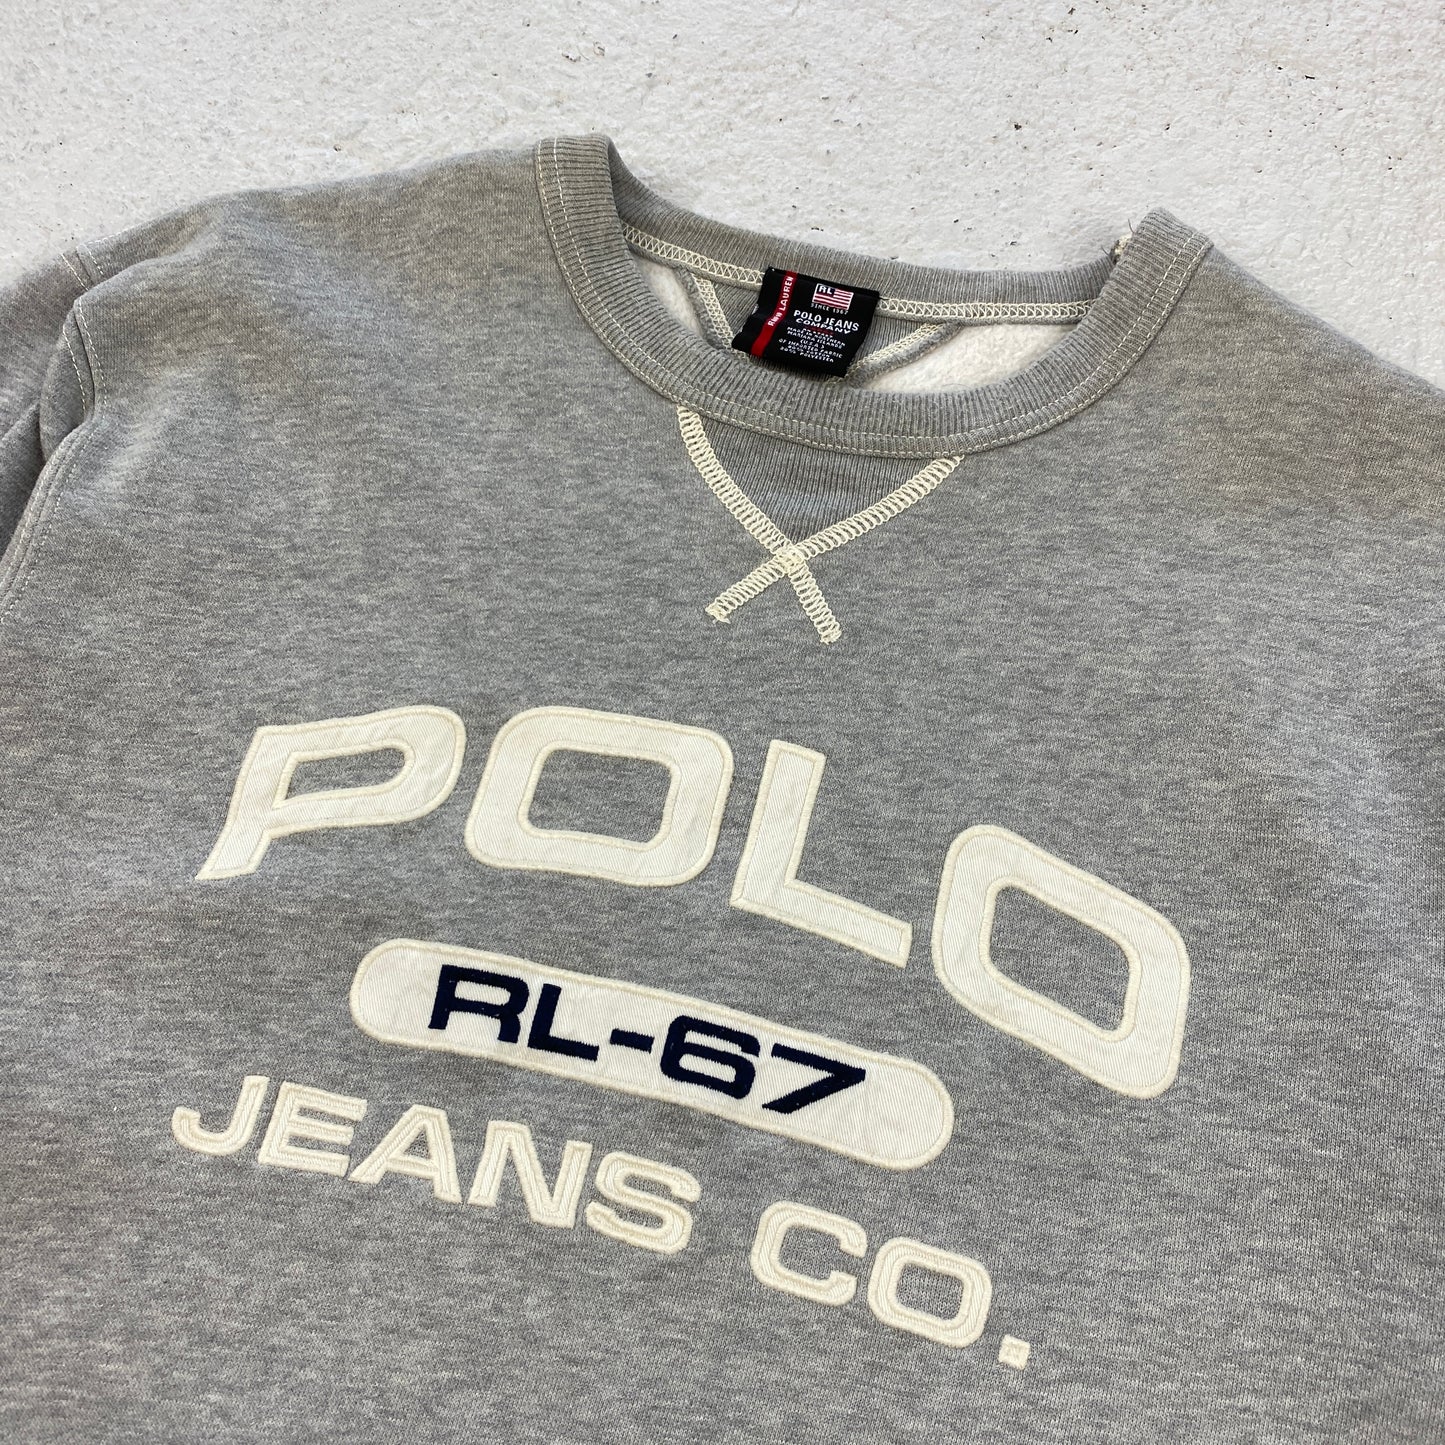 Polo Ralph Lauren heavyweight sweater (L)